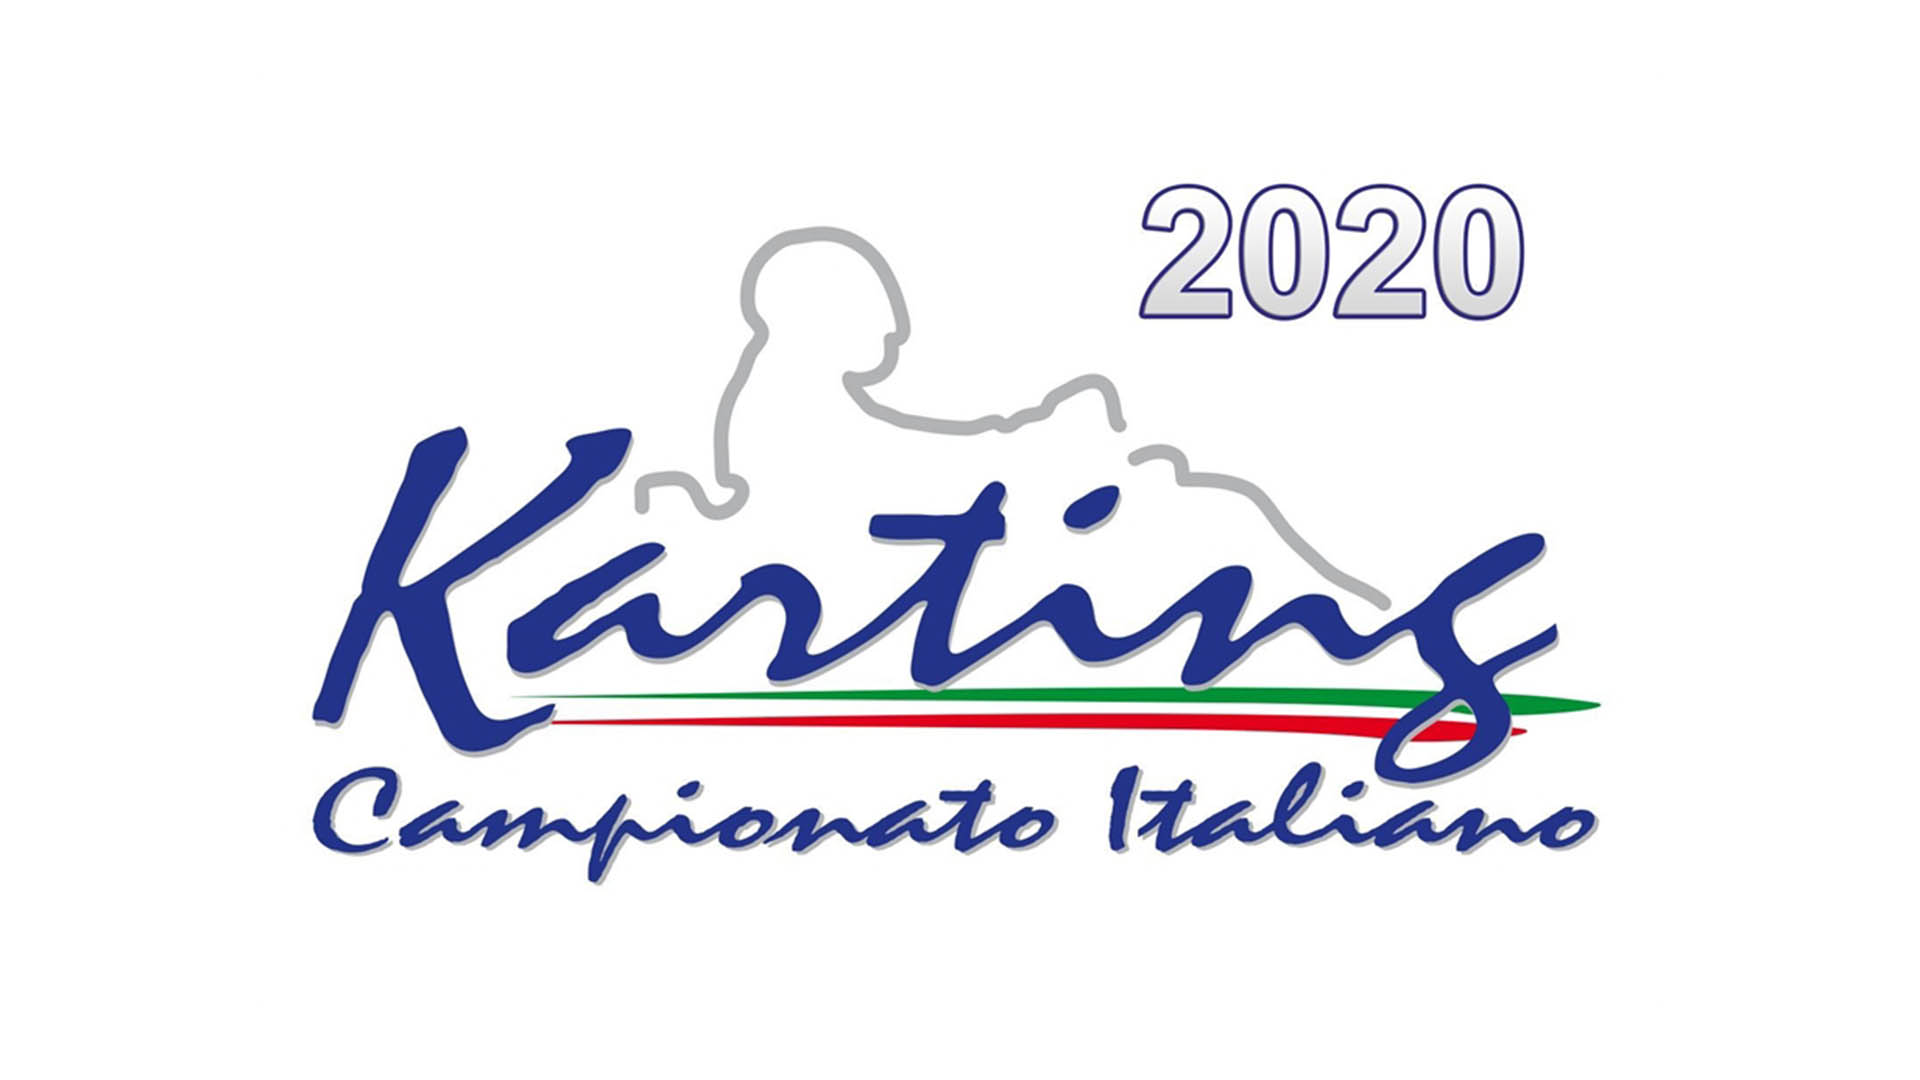 Vincitori del Campionato Italiano con Aci Karting 2020